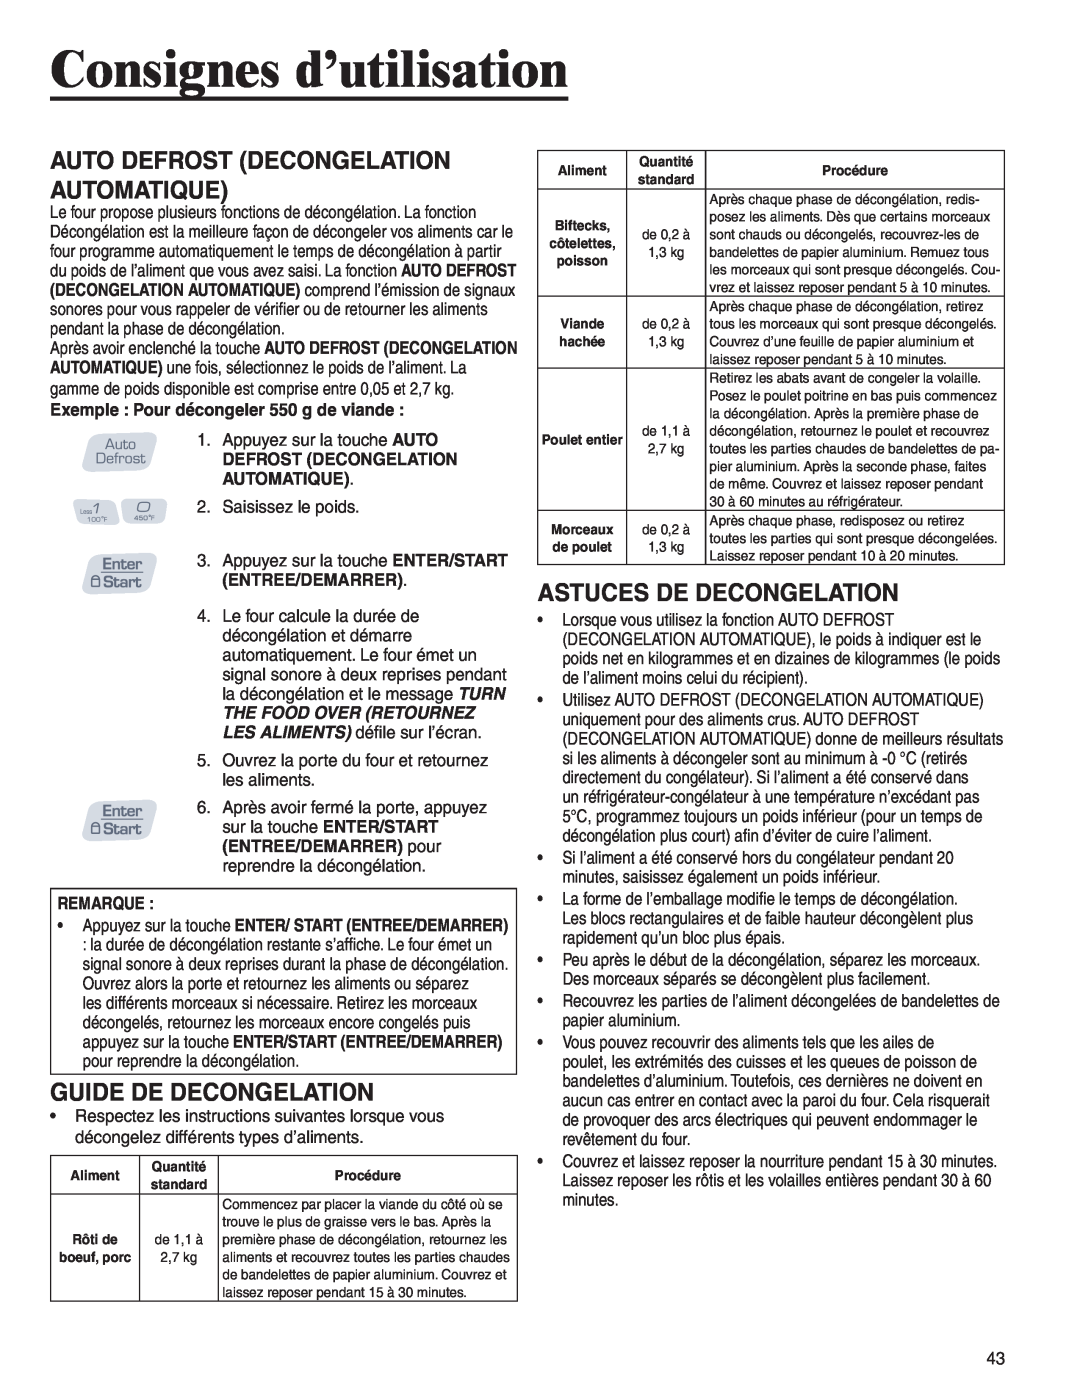 Amana AMC6158BCB, AMC6158BAB Guide De Decongelation, Astuces De Decongelation, Auto Defrost Decongelation Automatique 